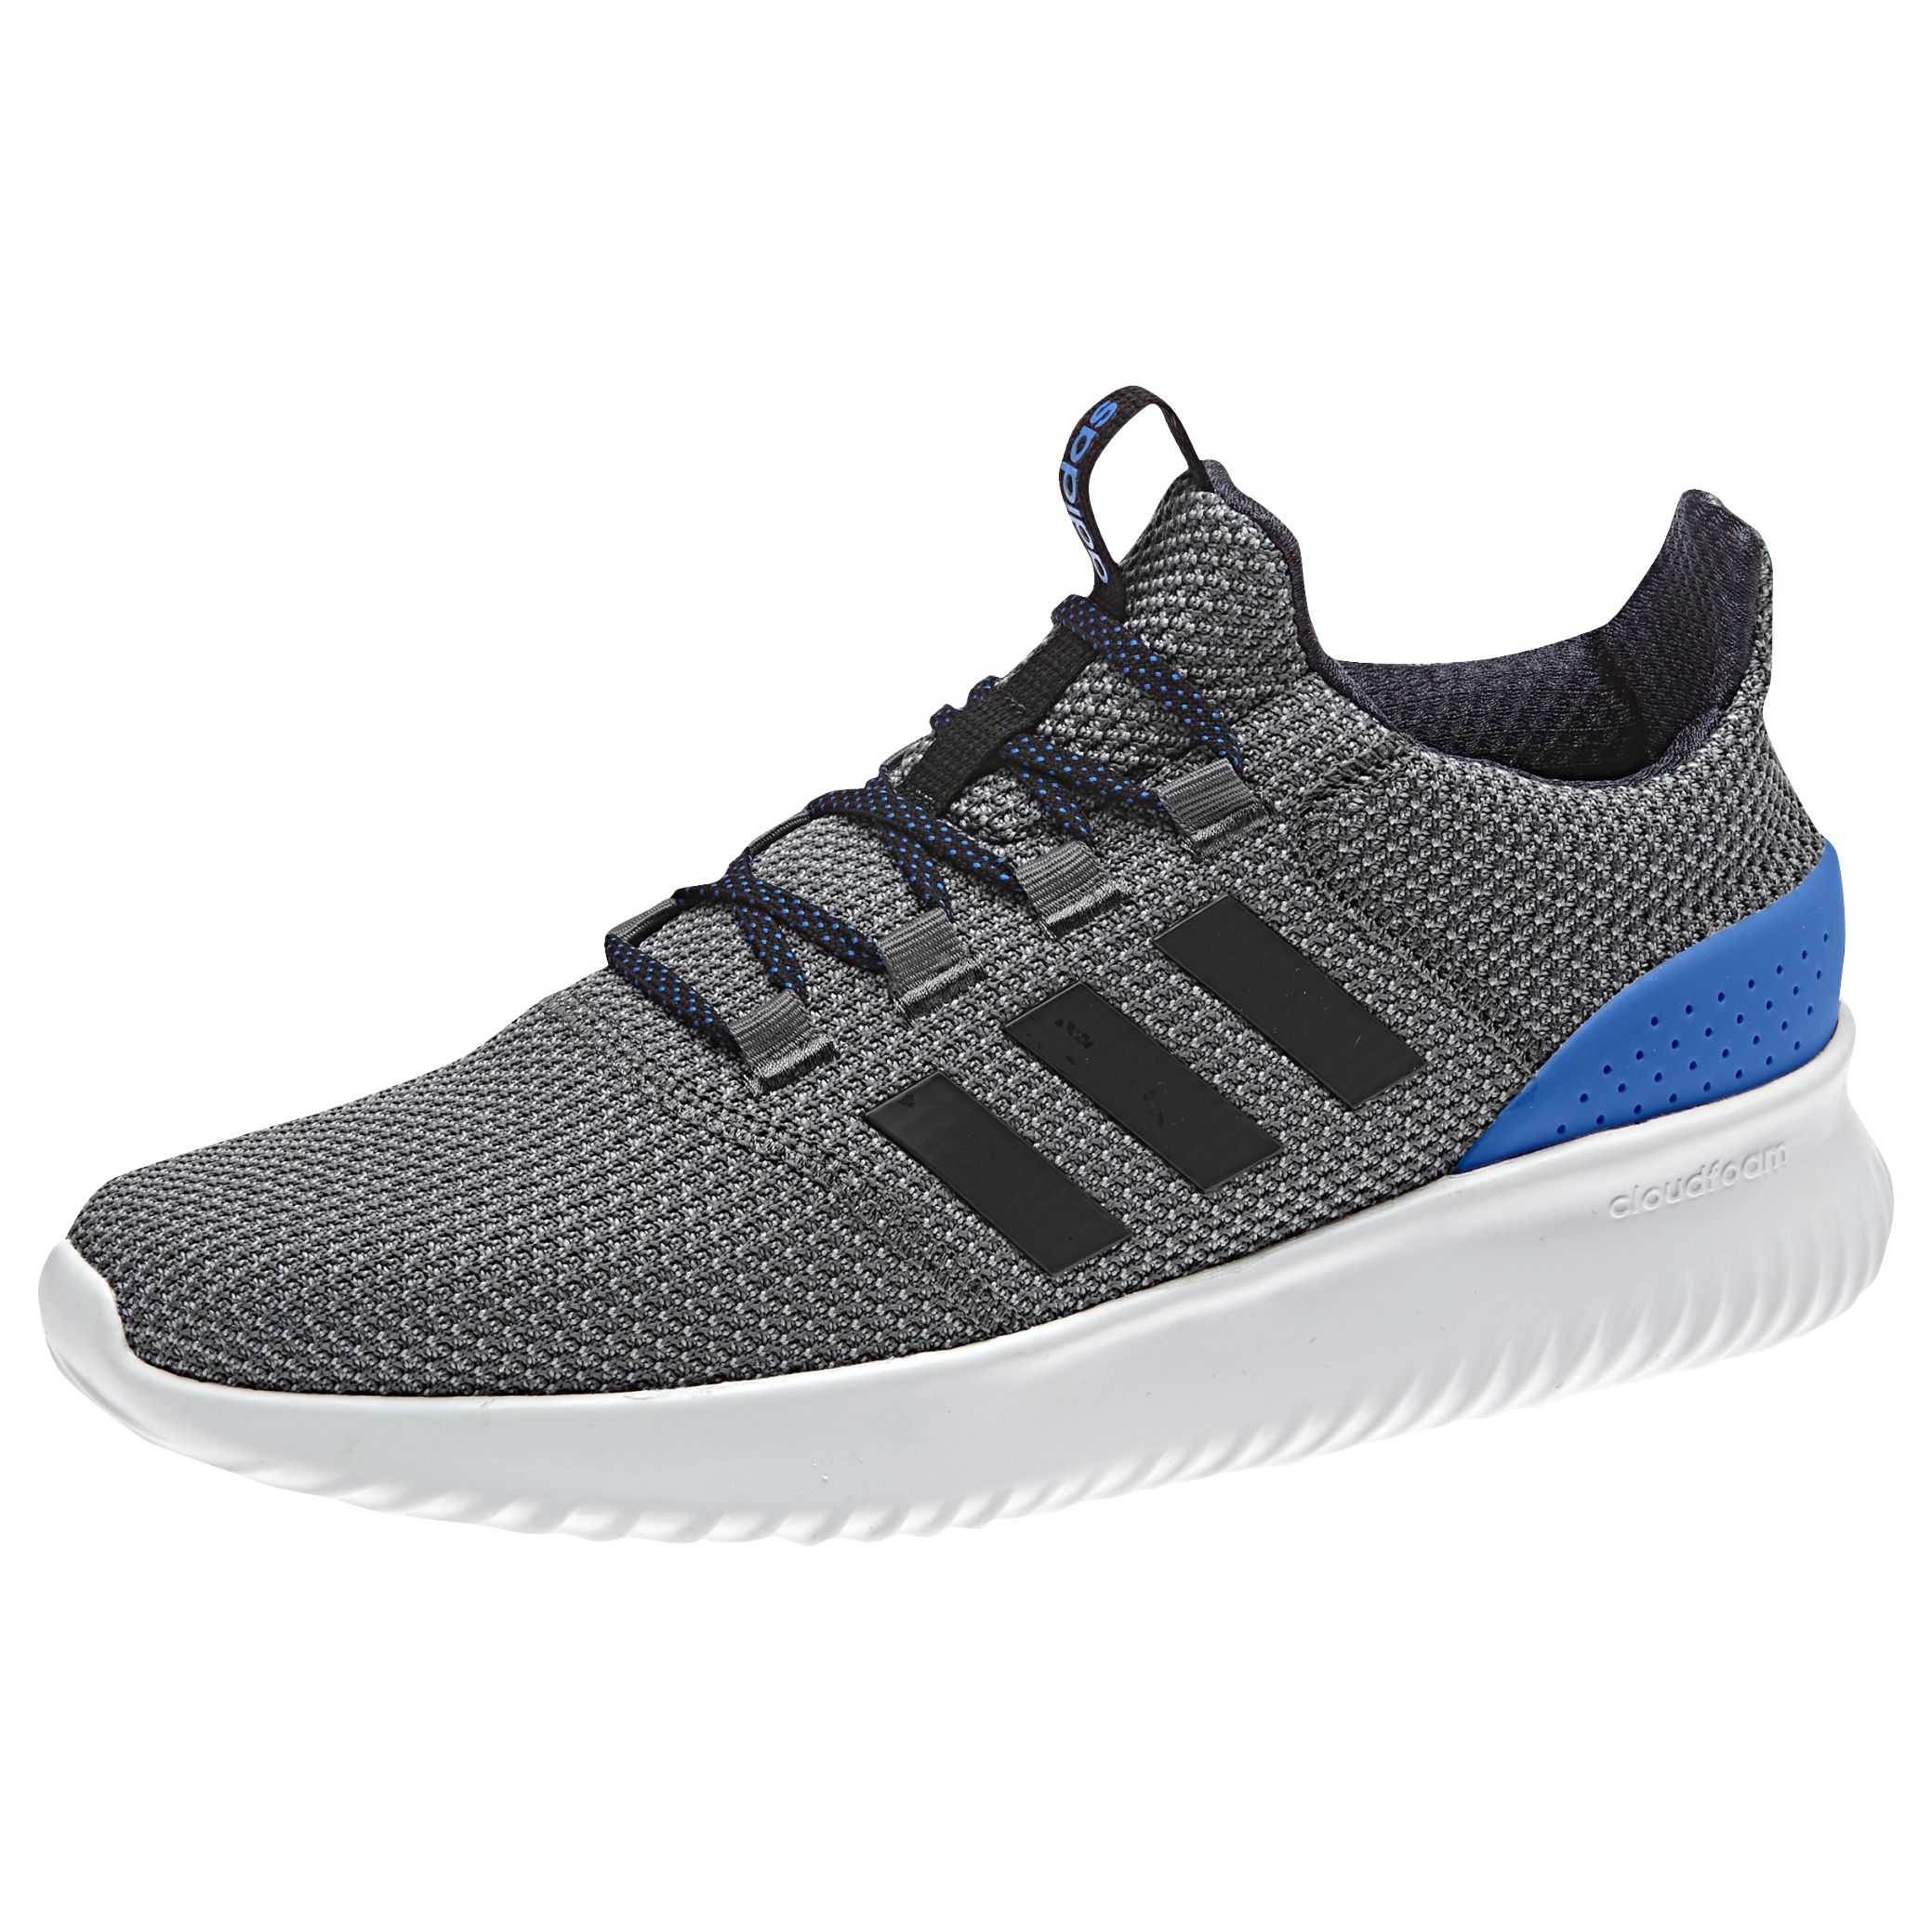 adidas grey blue trainers